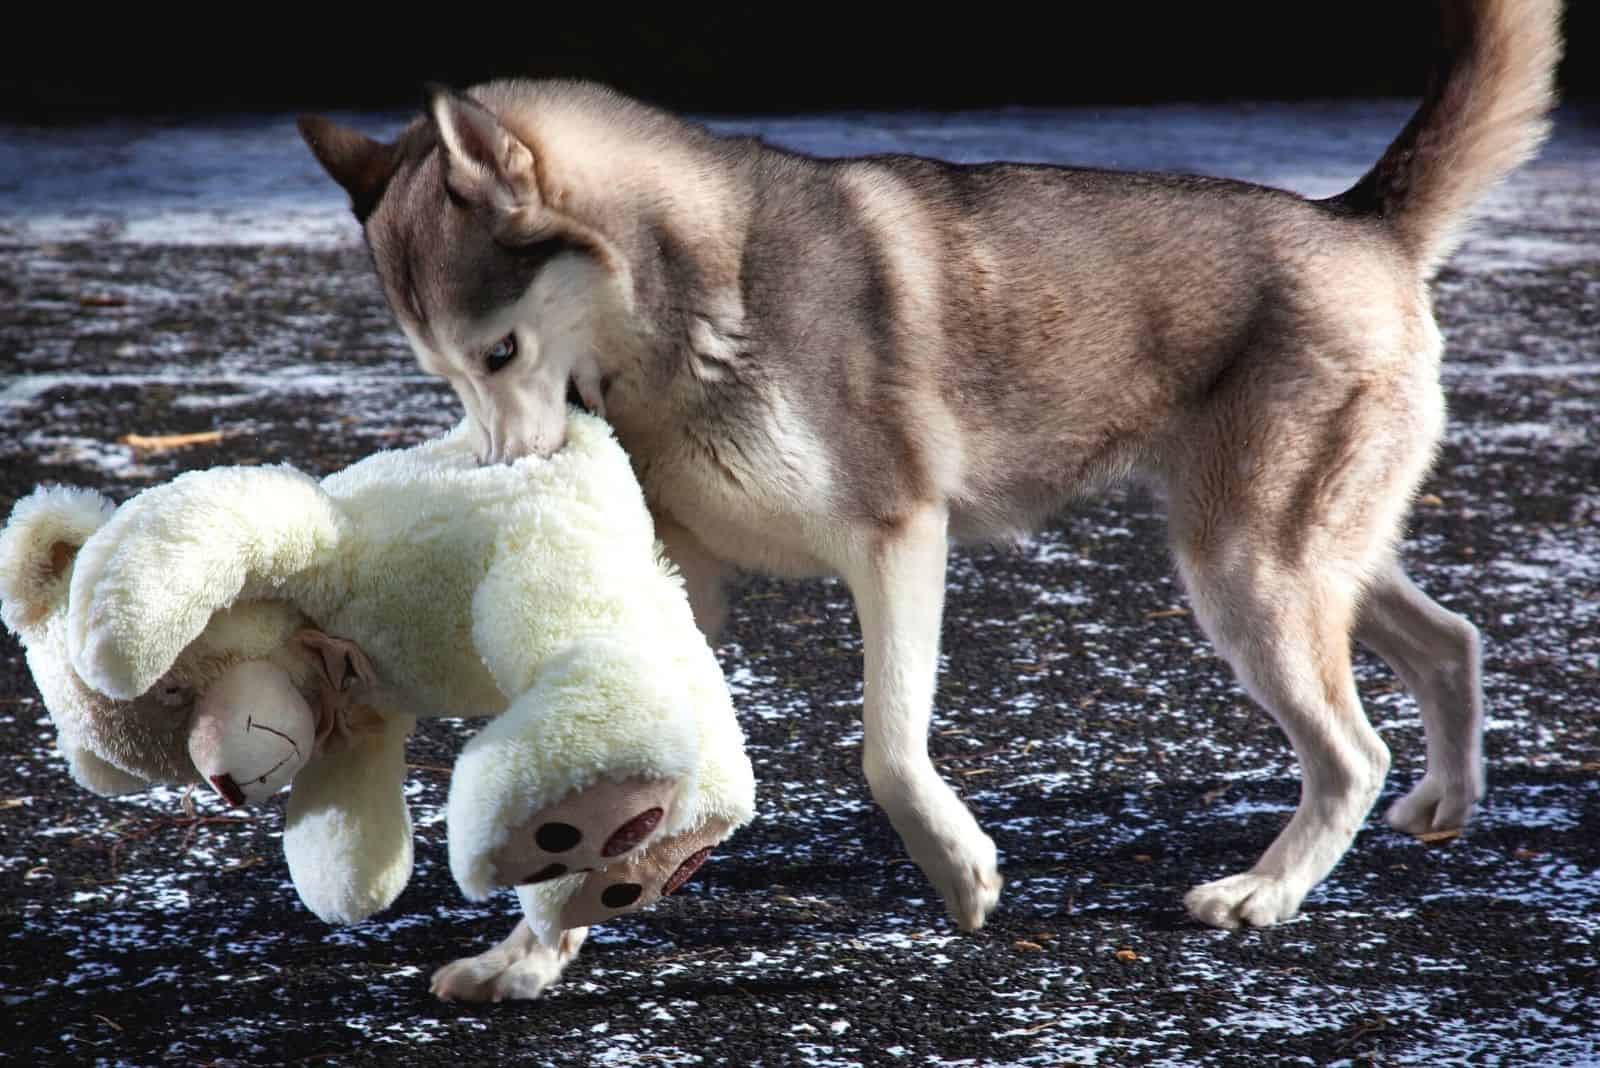 siberian husky carrying a teddy bear